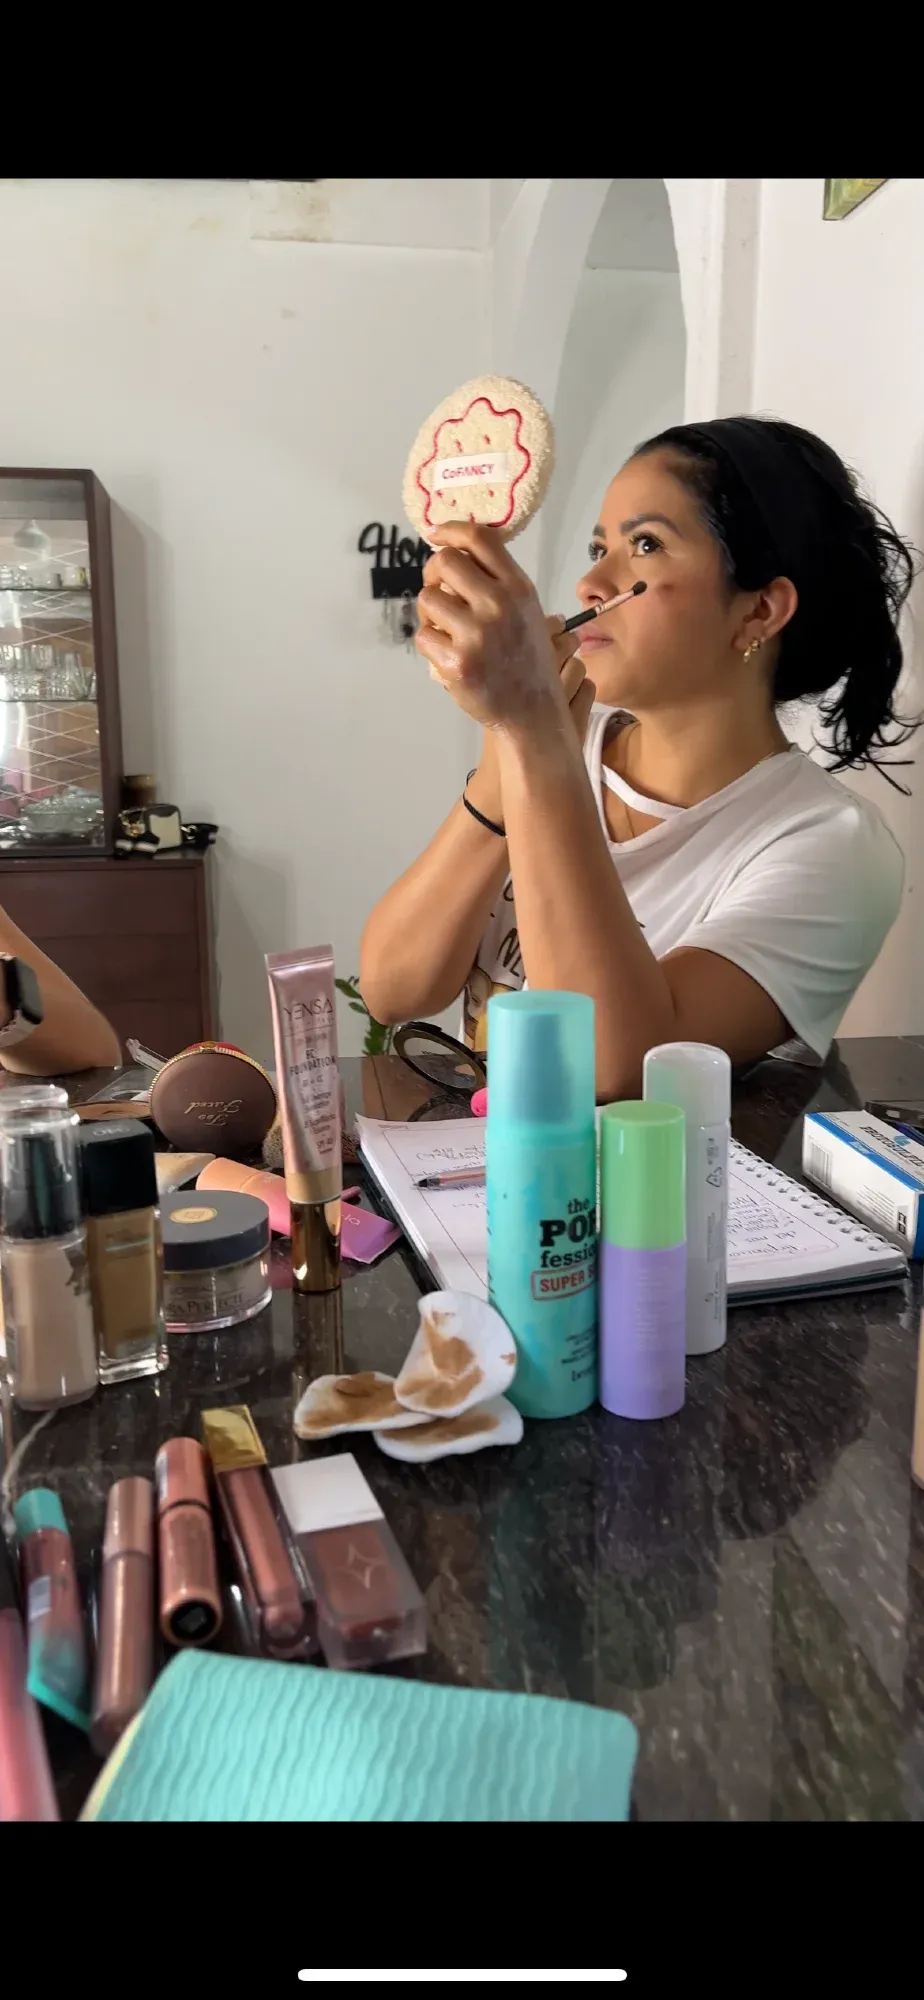 [ESP/ENG] Día de curso de maquillaje 💖✨| Day of the makeup course